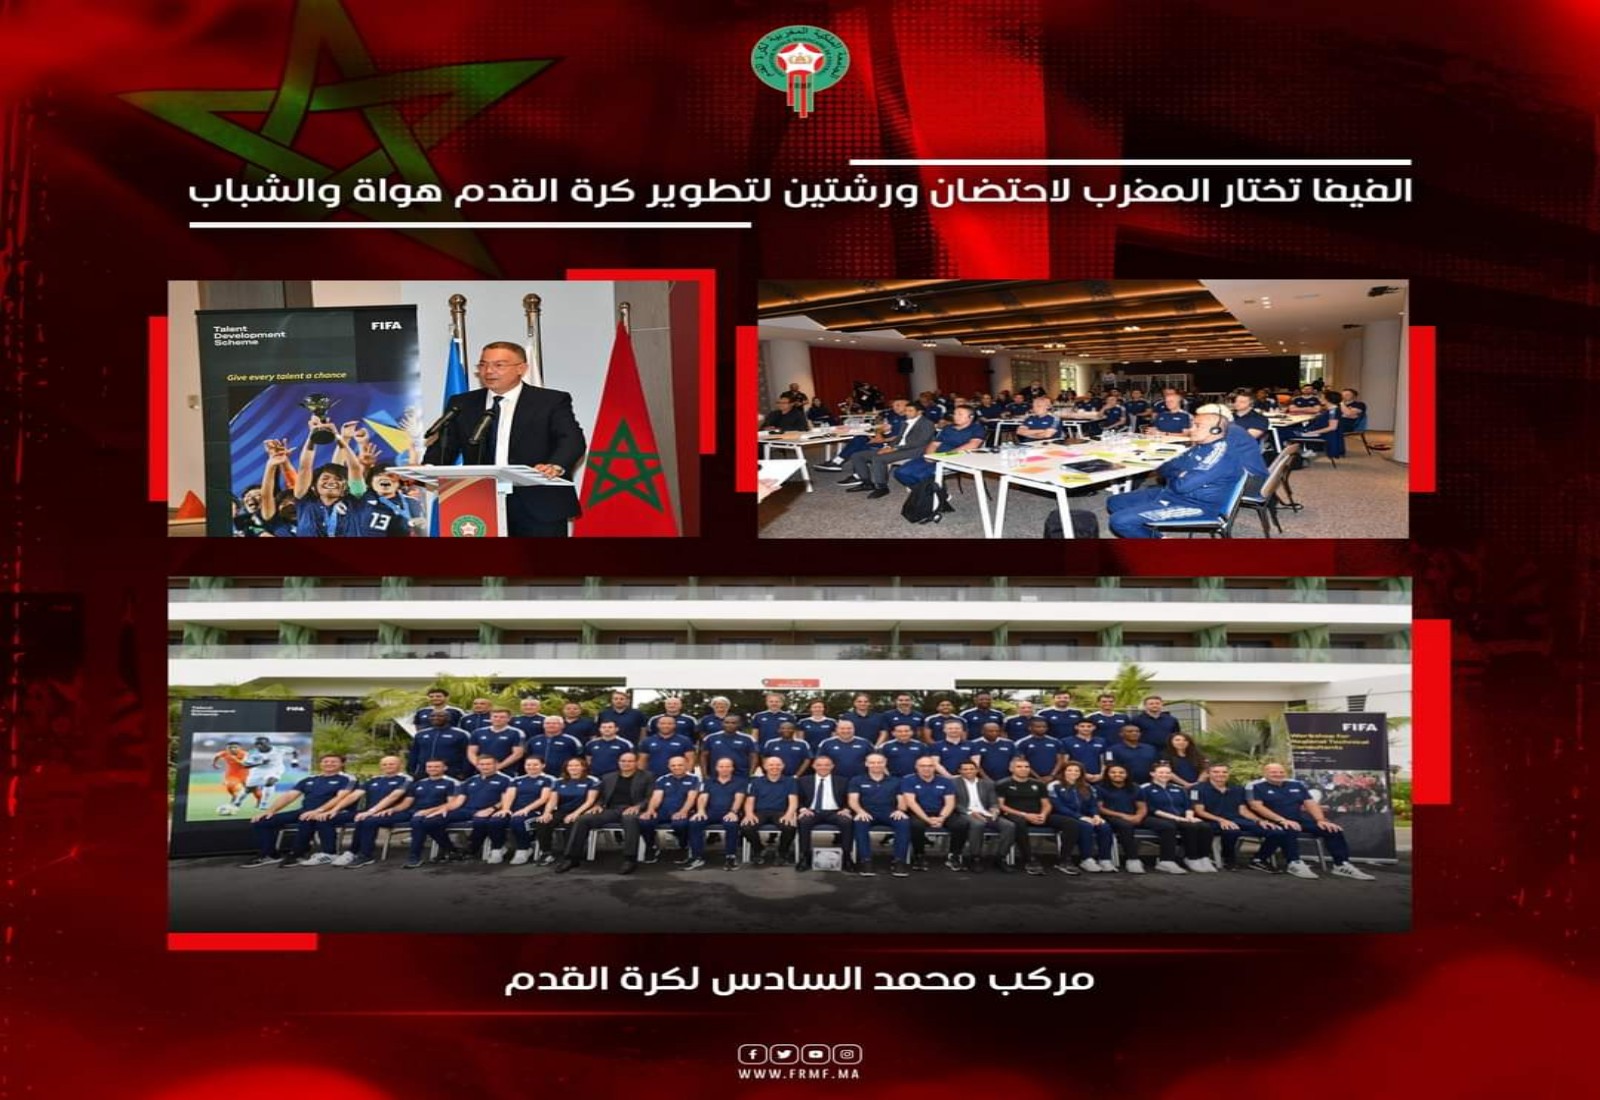 الفيفا تختار المغرب لإحتضان ورشتين لتطوير كرة القدم هواة والشباب